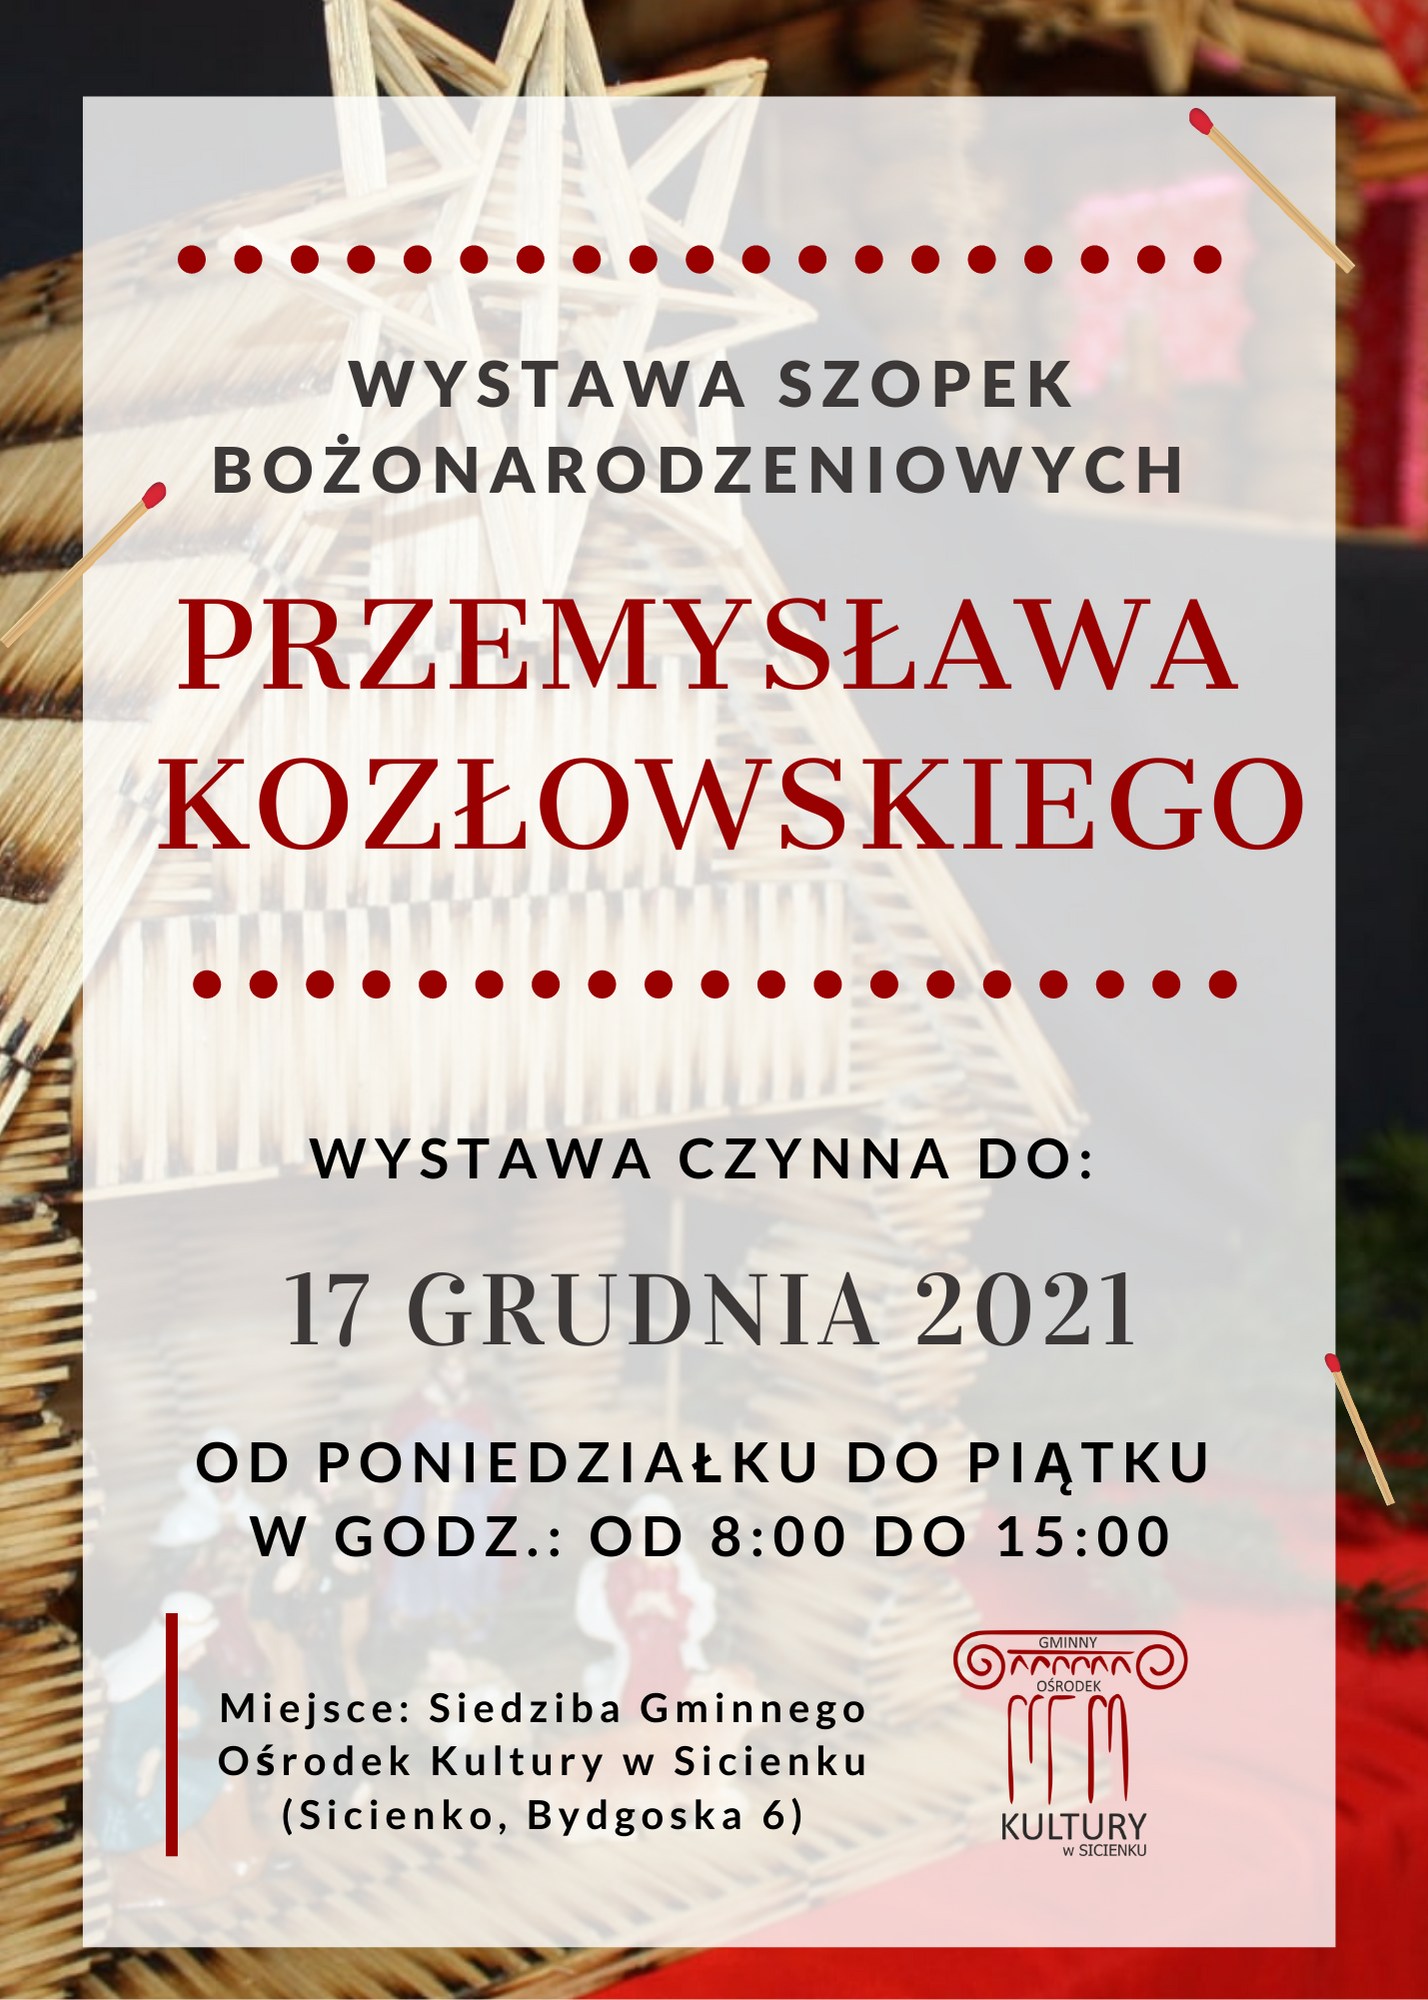 Wystawa szopek bożonarodzeniowych Pana Przemysława Kozłowskiego